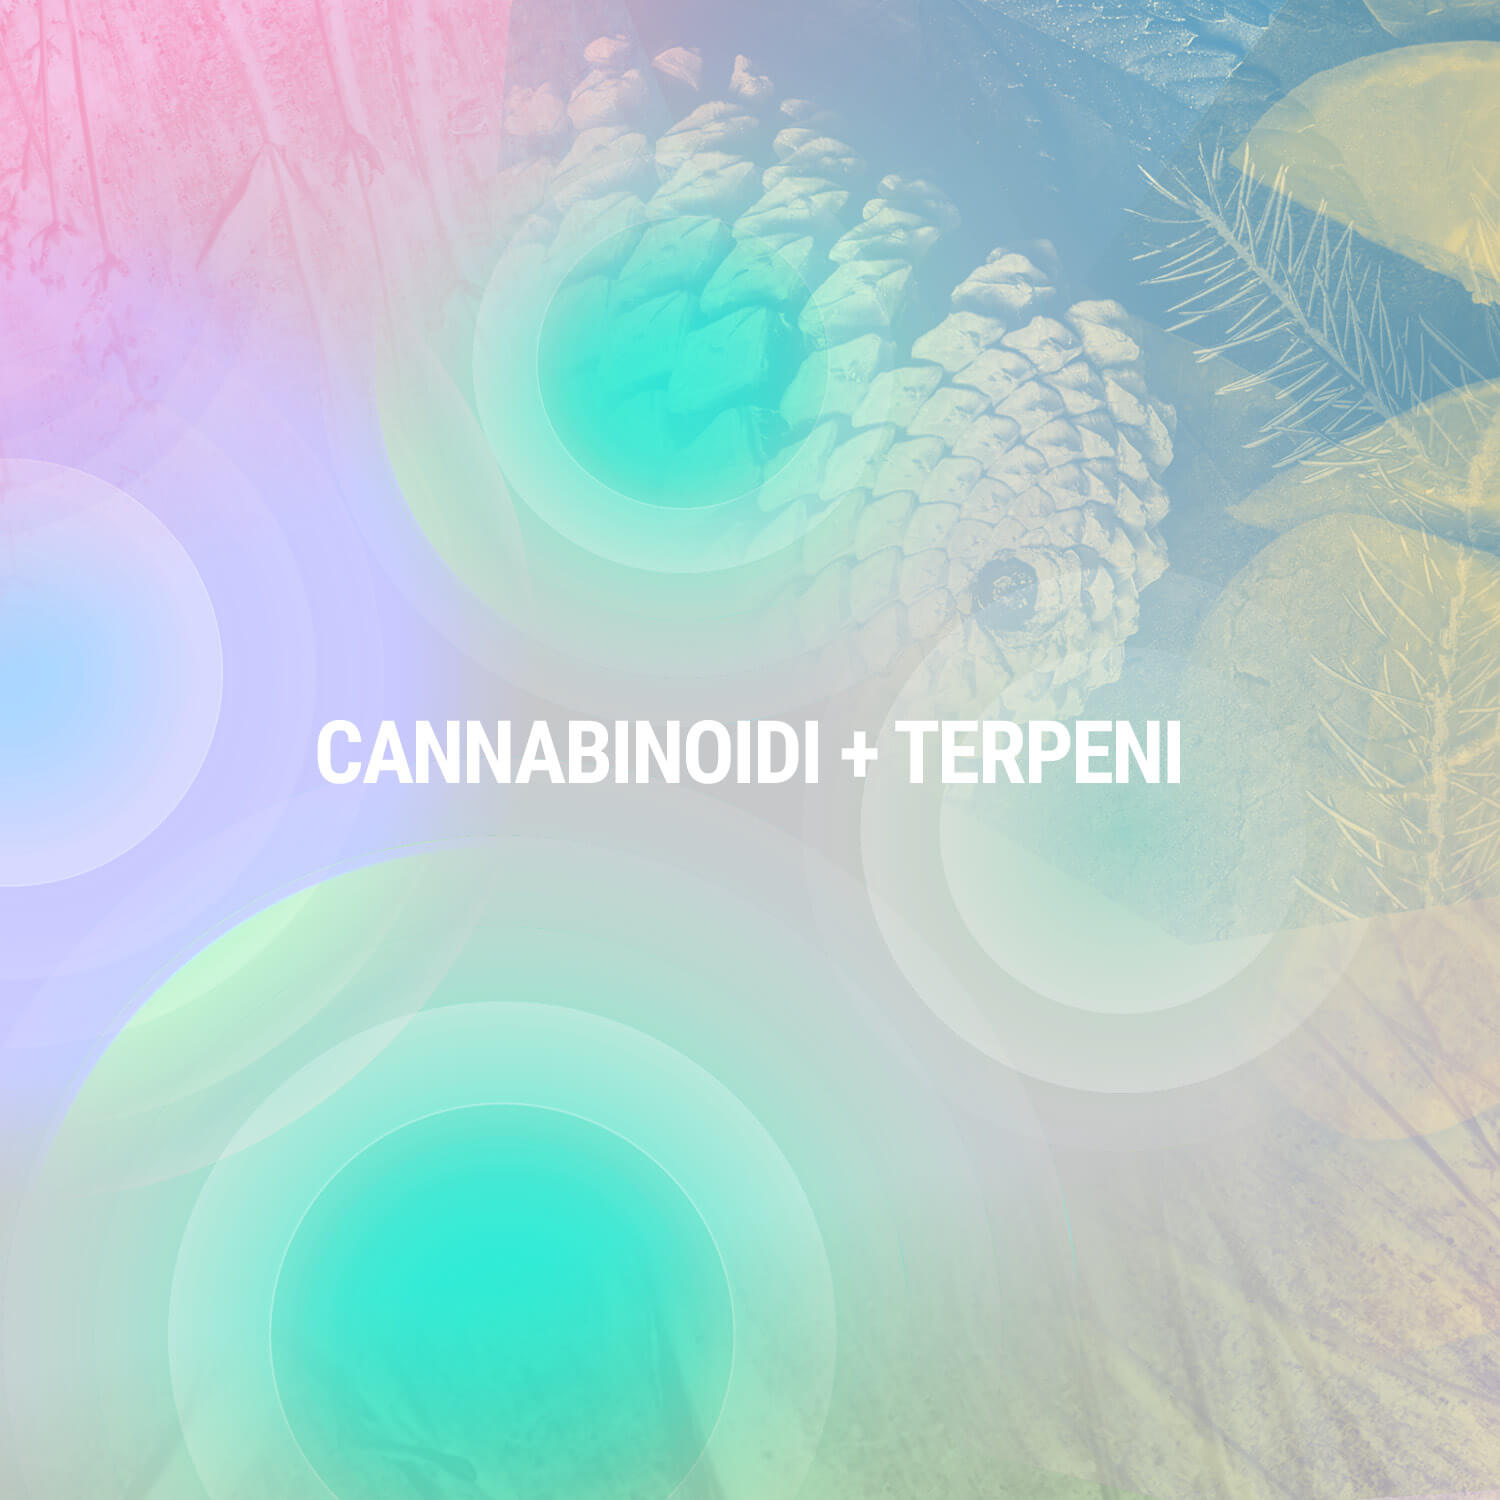 Cannabinoidi + Terpeni